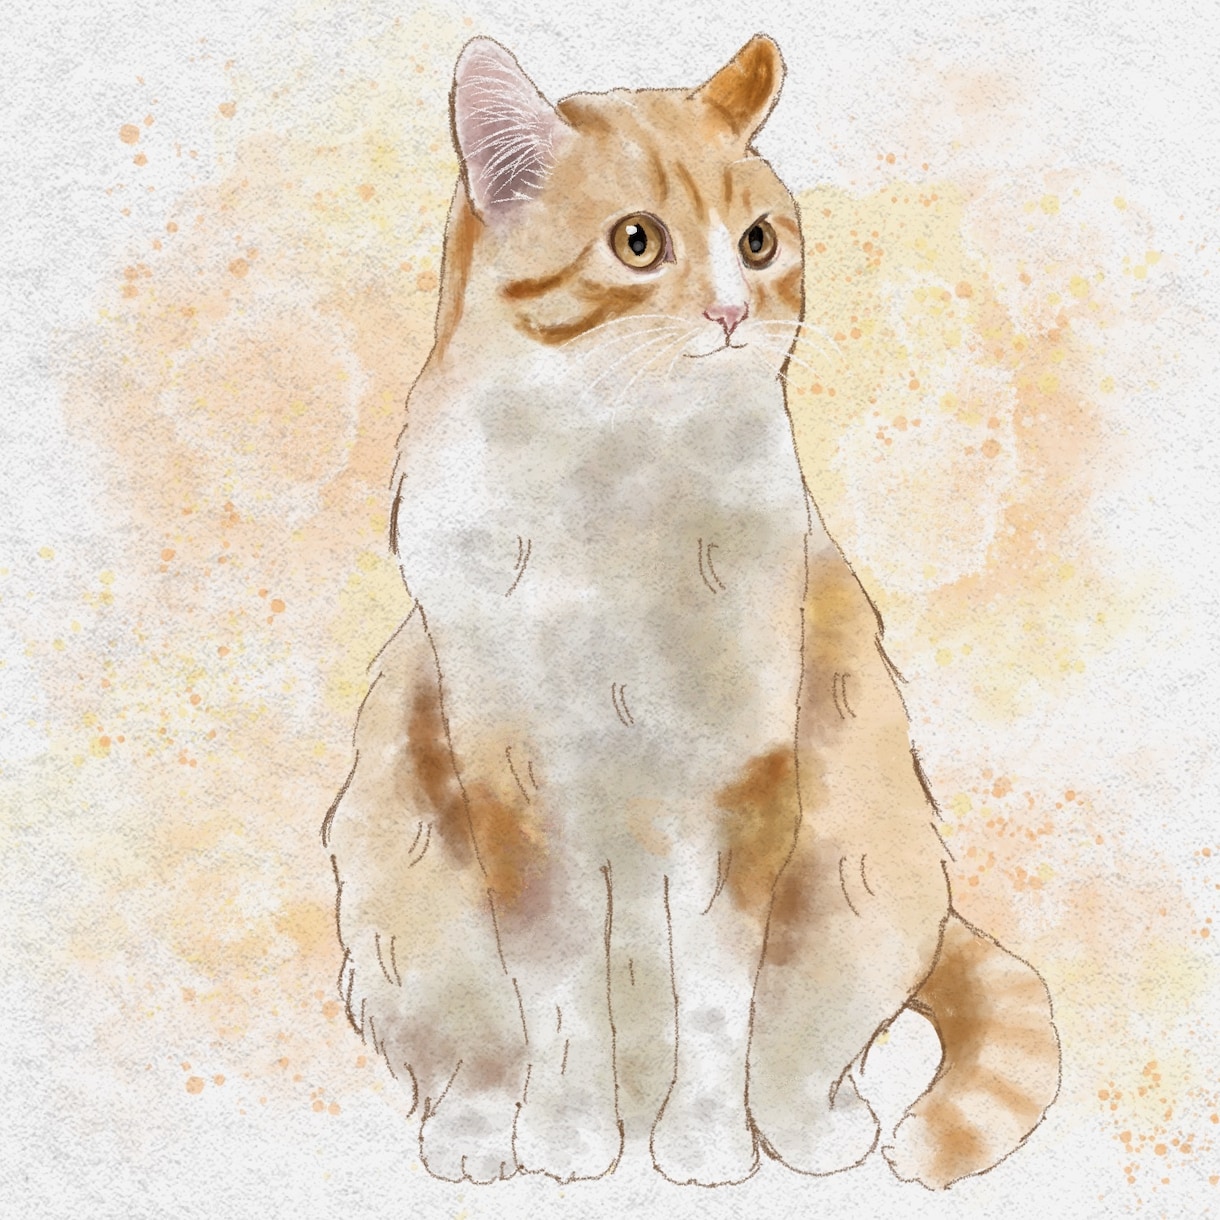 愛猫さんのイラストを描きます ちょっぴりリアルでおしゃれな雰囲気に仕上げます イメージ1